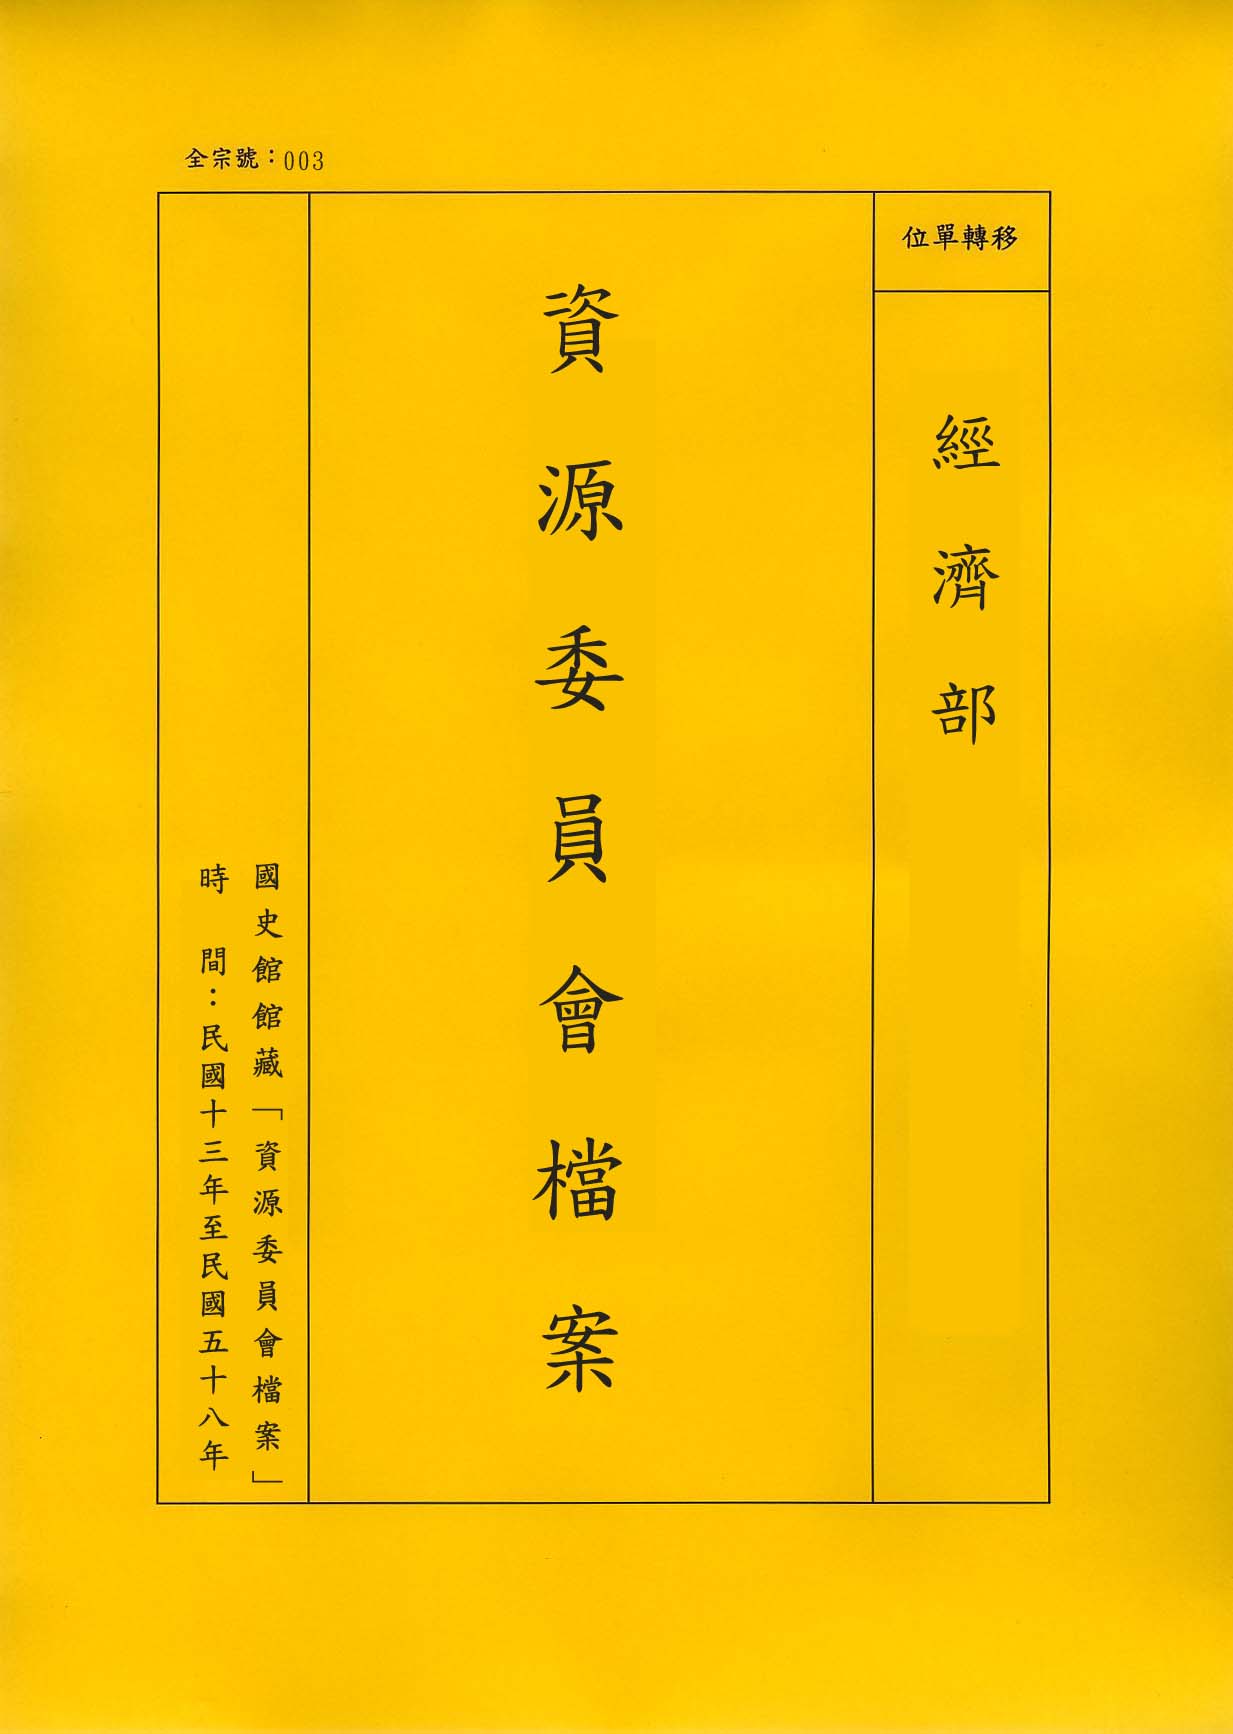 卷名:染織業工廠調查表—上海(一)(003-010306-0436)